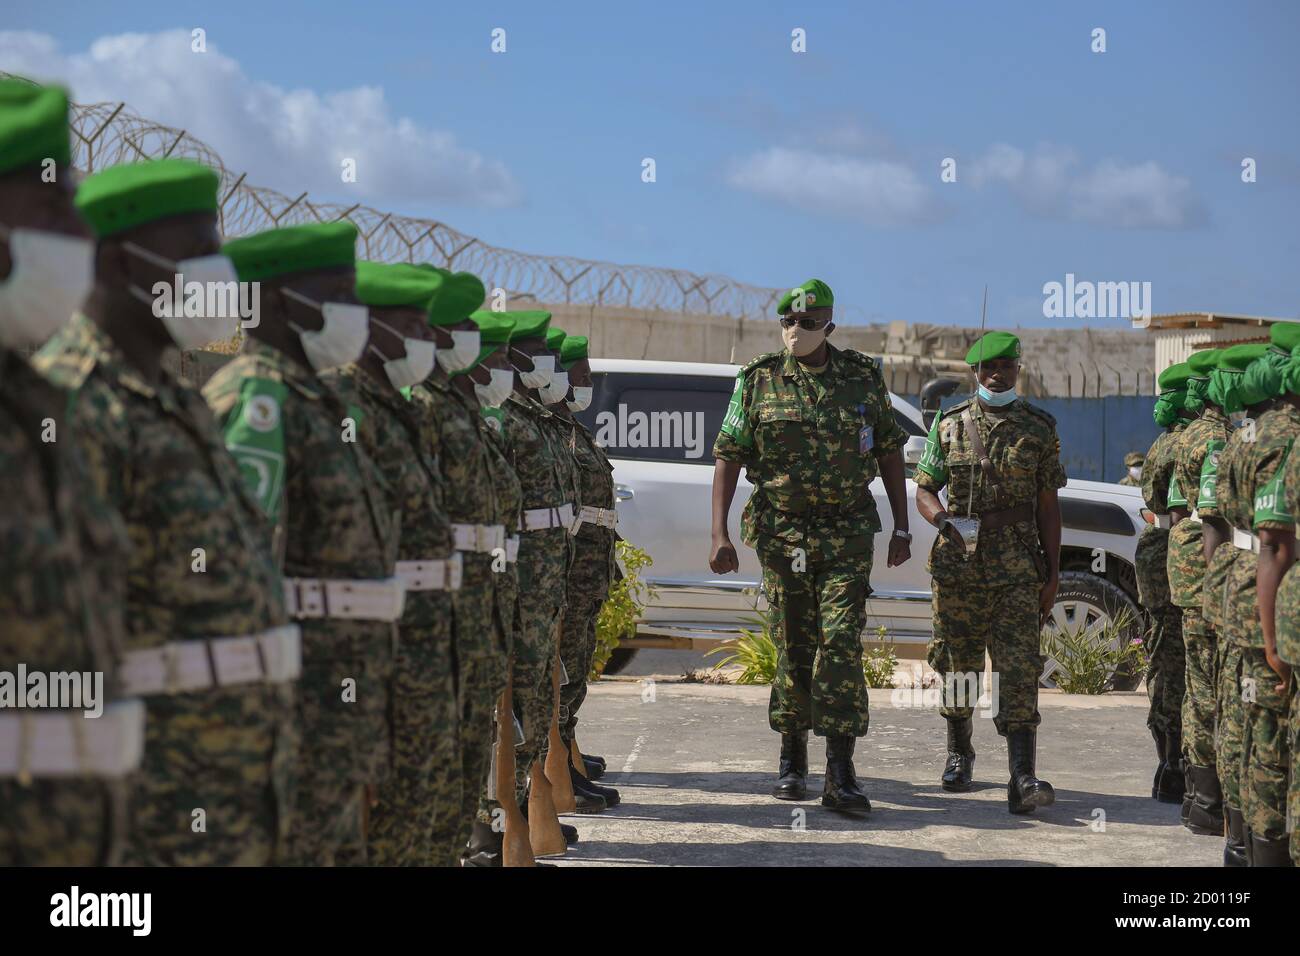 El Teniente General Diomede Ndegeya, Comandante de la Fuerza de la Misión de la Unión Africana en Somalia (AMISOM), inspecciona a un guardia de honor montado por tropas ugandesas de la AMISOM, a su llegada al cuartel general del sector 1 en Mogadishu, Somalia, el 9 de septiembre de 2020. Foto de stock